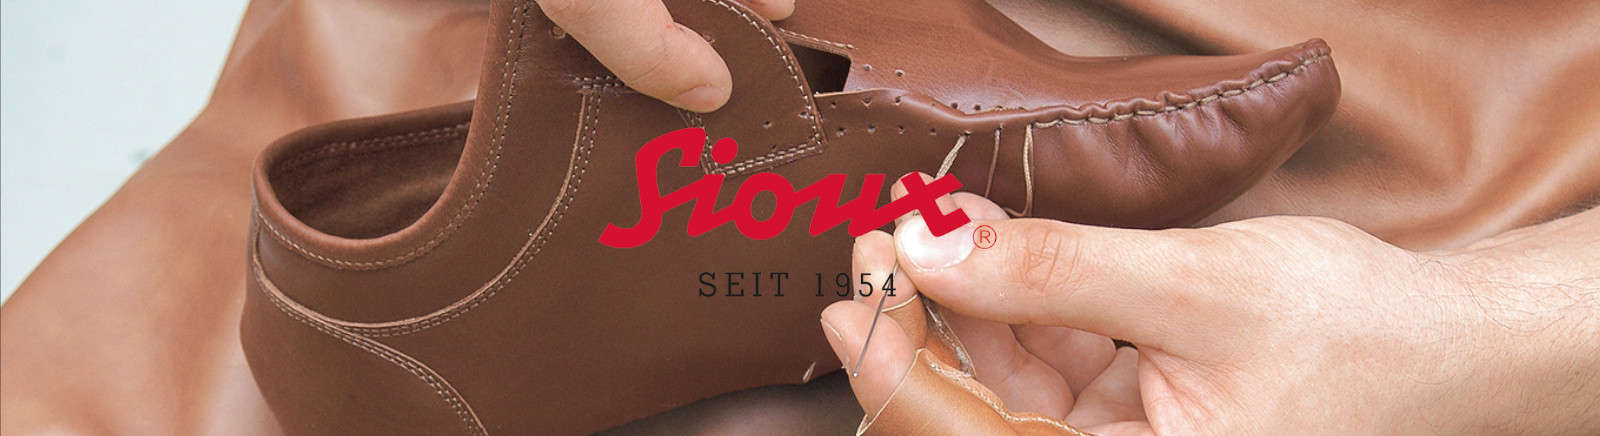 Sioux Herrenschuhe online entdecken im Schuhe Shop von Juppen